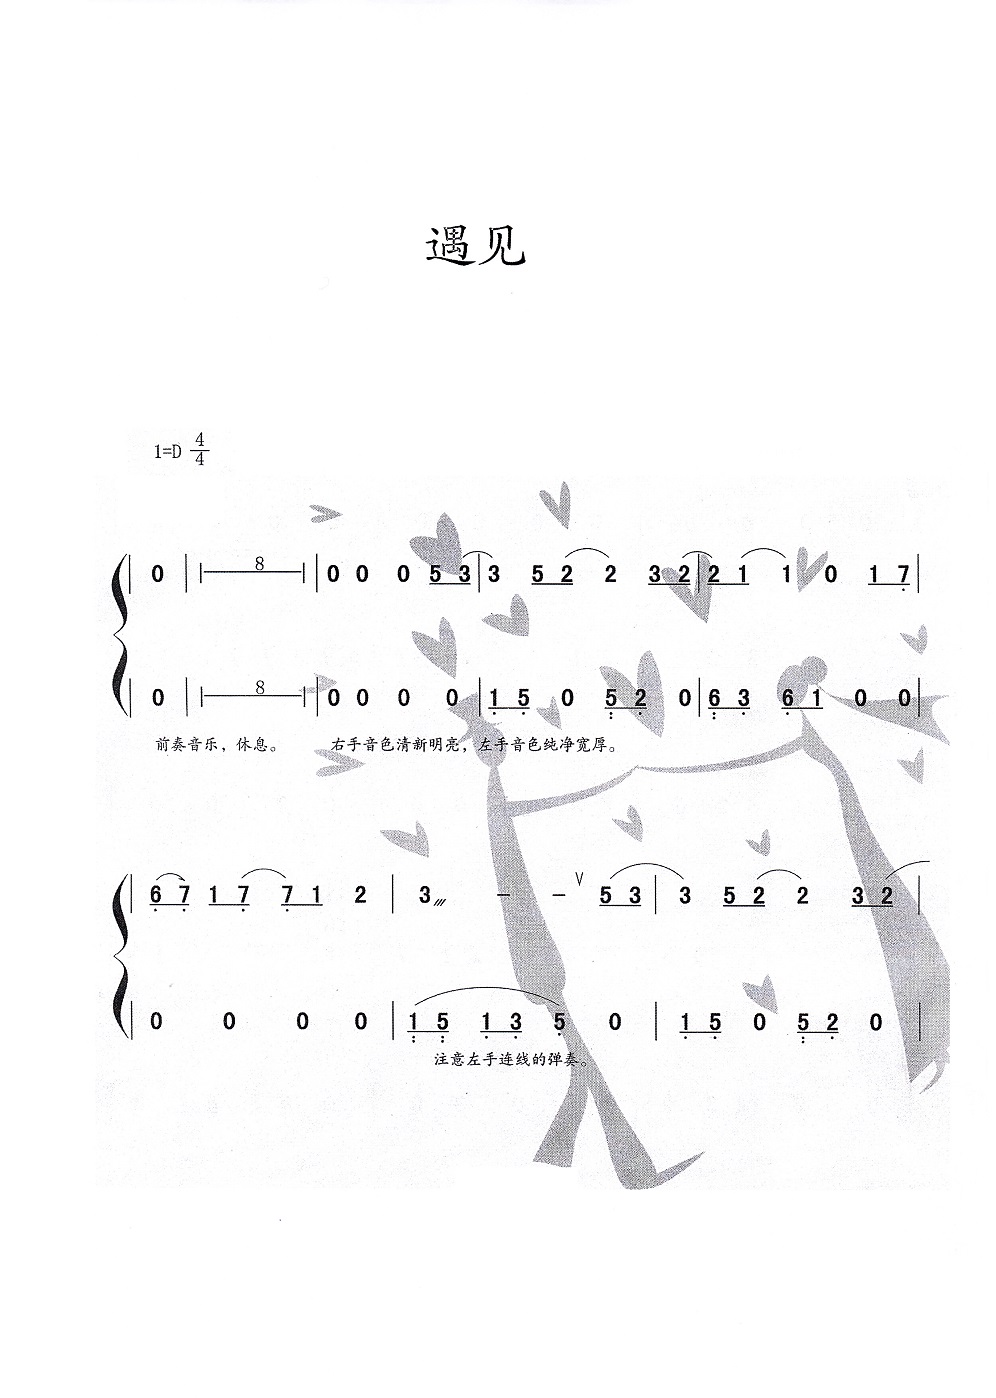 孙燕姿歌曲《遇见》古筝版演奏简谱及伴奏下载